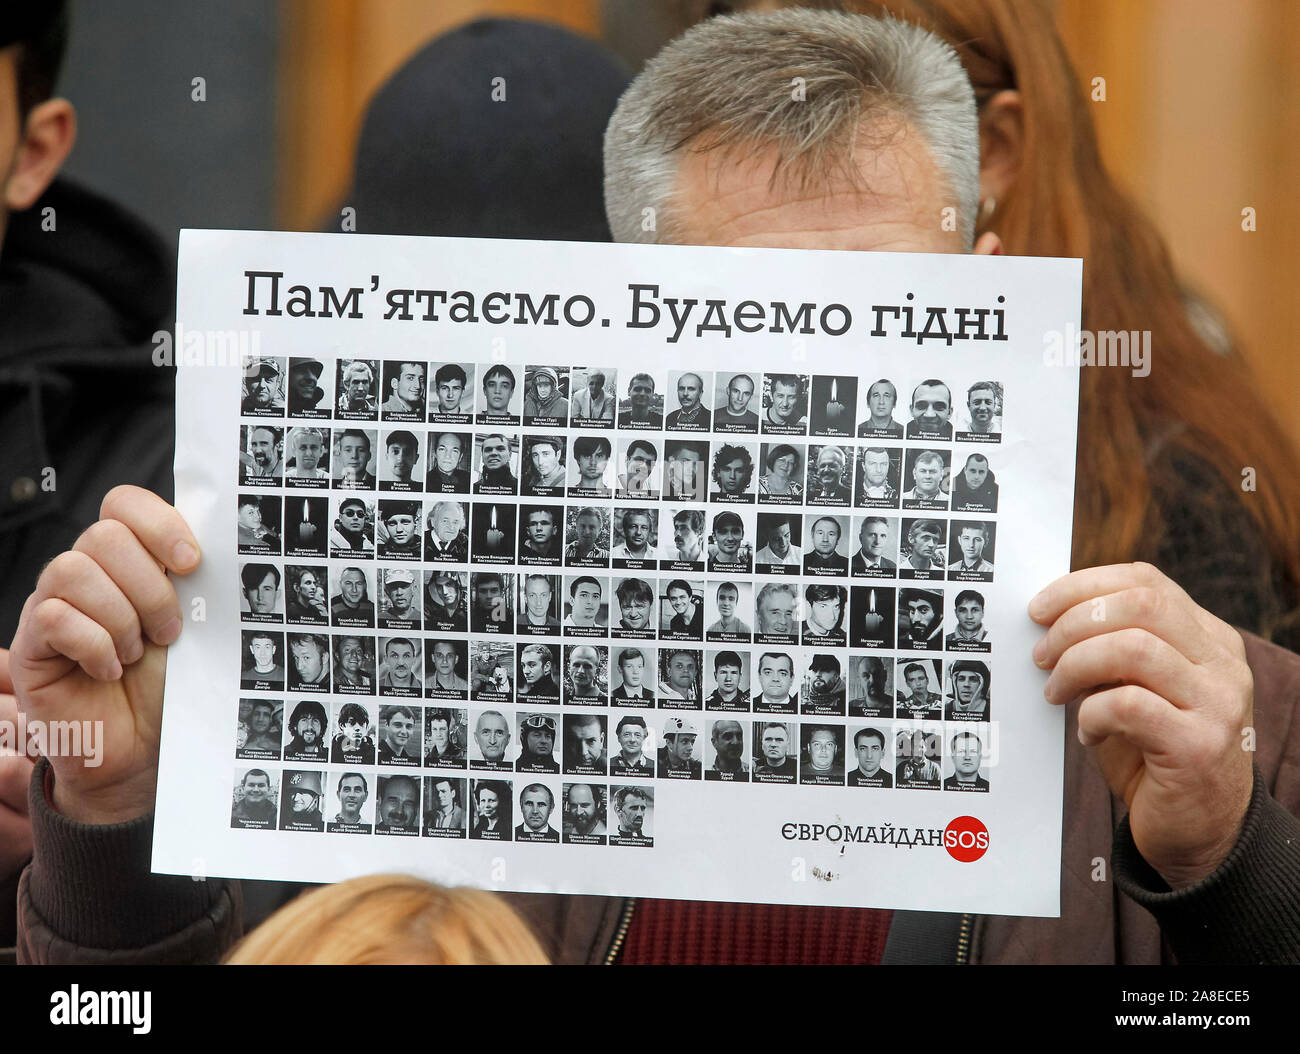 Ein Mann hält ein Schild mit Porträts von toten Aktivisten oder die Helden der Himmlischen Hundert, außerhalb des Präsidialbüros während des Protestes. Verwandte und Aktivisten, die Nachfrage nicht Untersuchung der Maidan bei Veranstaltungen und der Tod des Aktivisten während der Revolution der Würde oder Euromaidan zu stoppen. Am 21. November 2019 die Ukrainer werden der 6. Jahrestag des Maidan oder der Euromaidan Revolution 2013-14, bei der mehr als hundert regierungsfeindlichen Demonstranten getötet wurden und waren die Helden des Himmlischen Hundert betitelt. Stockfoto